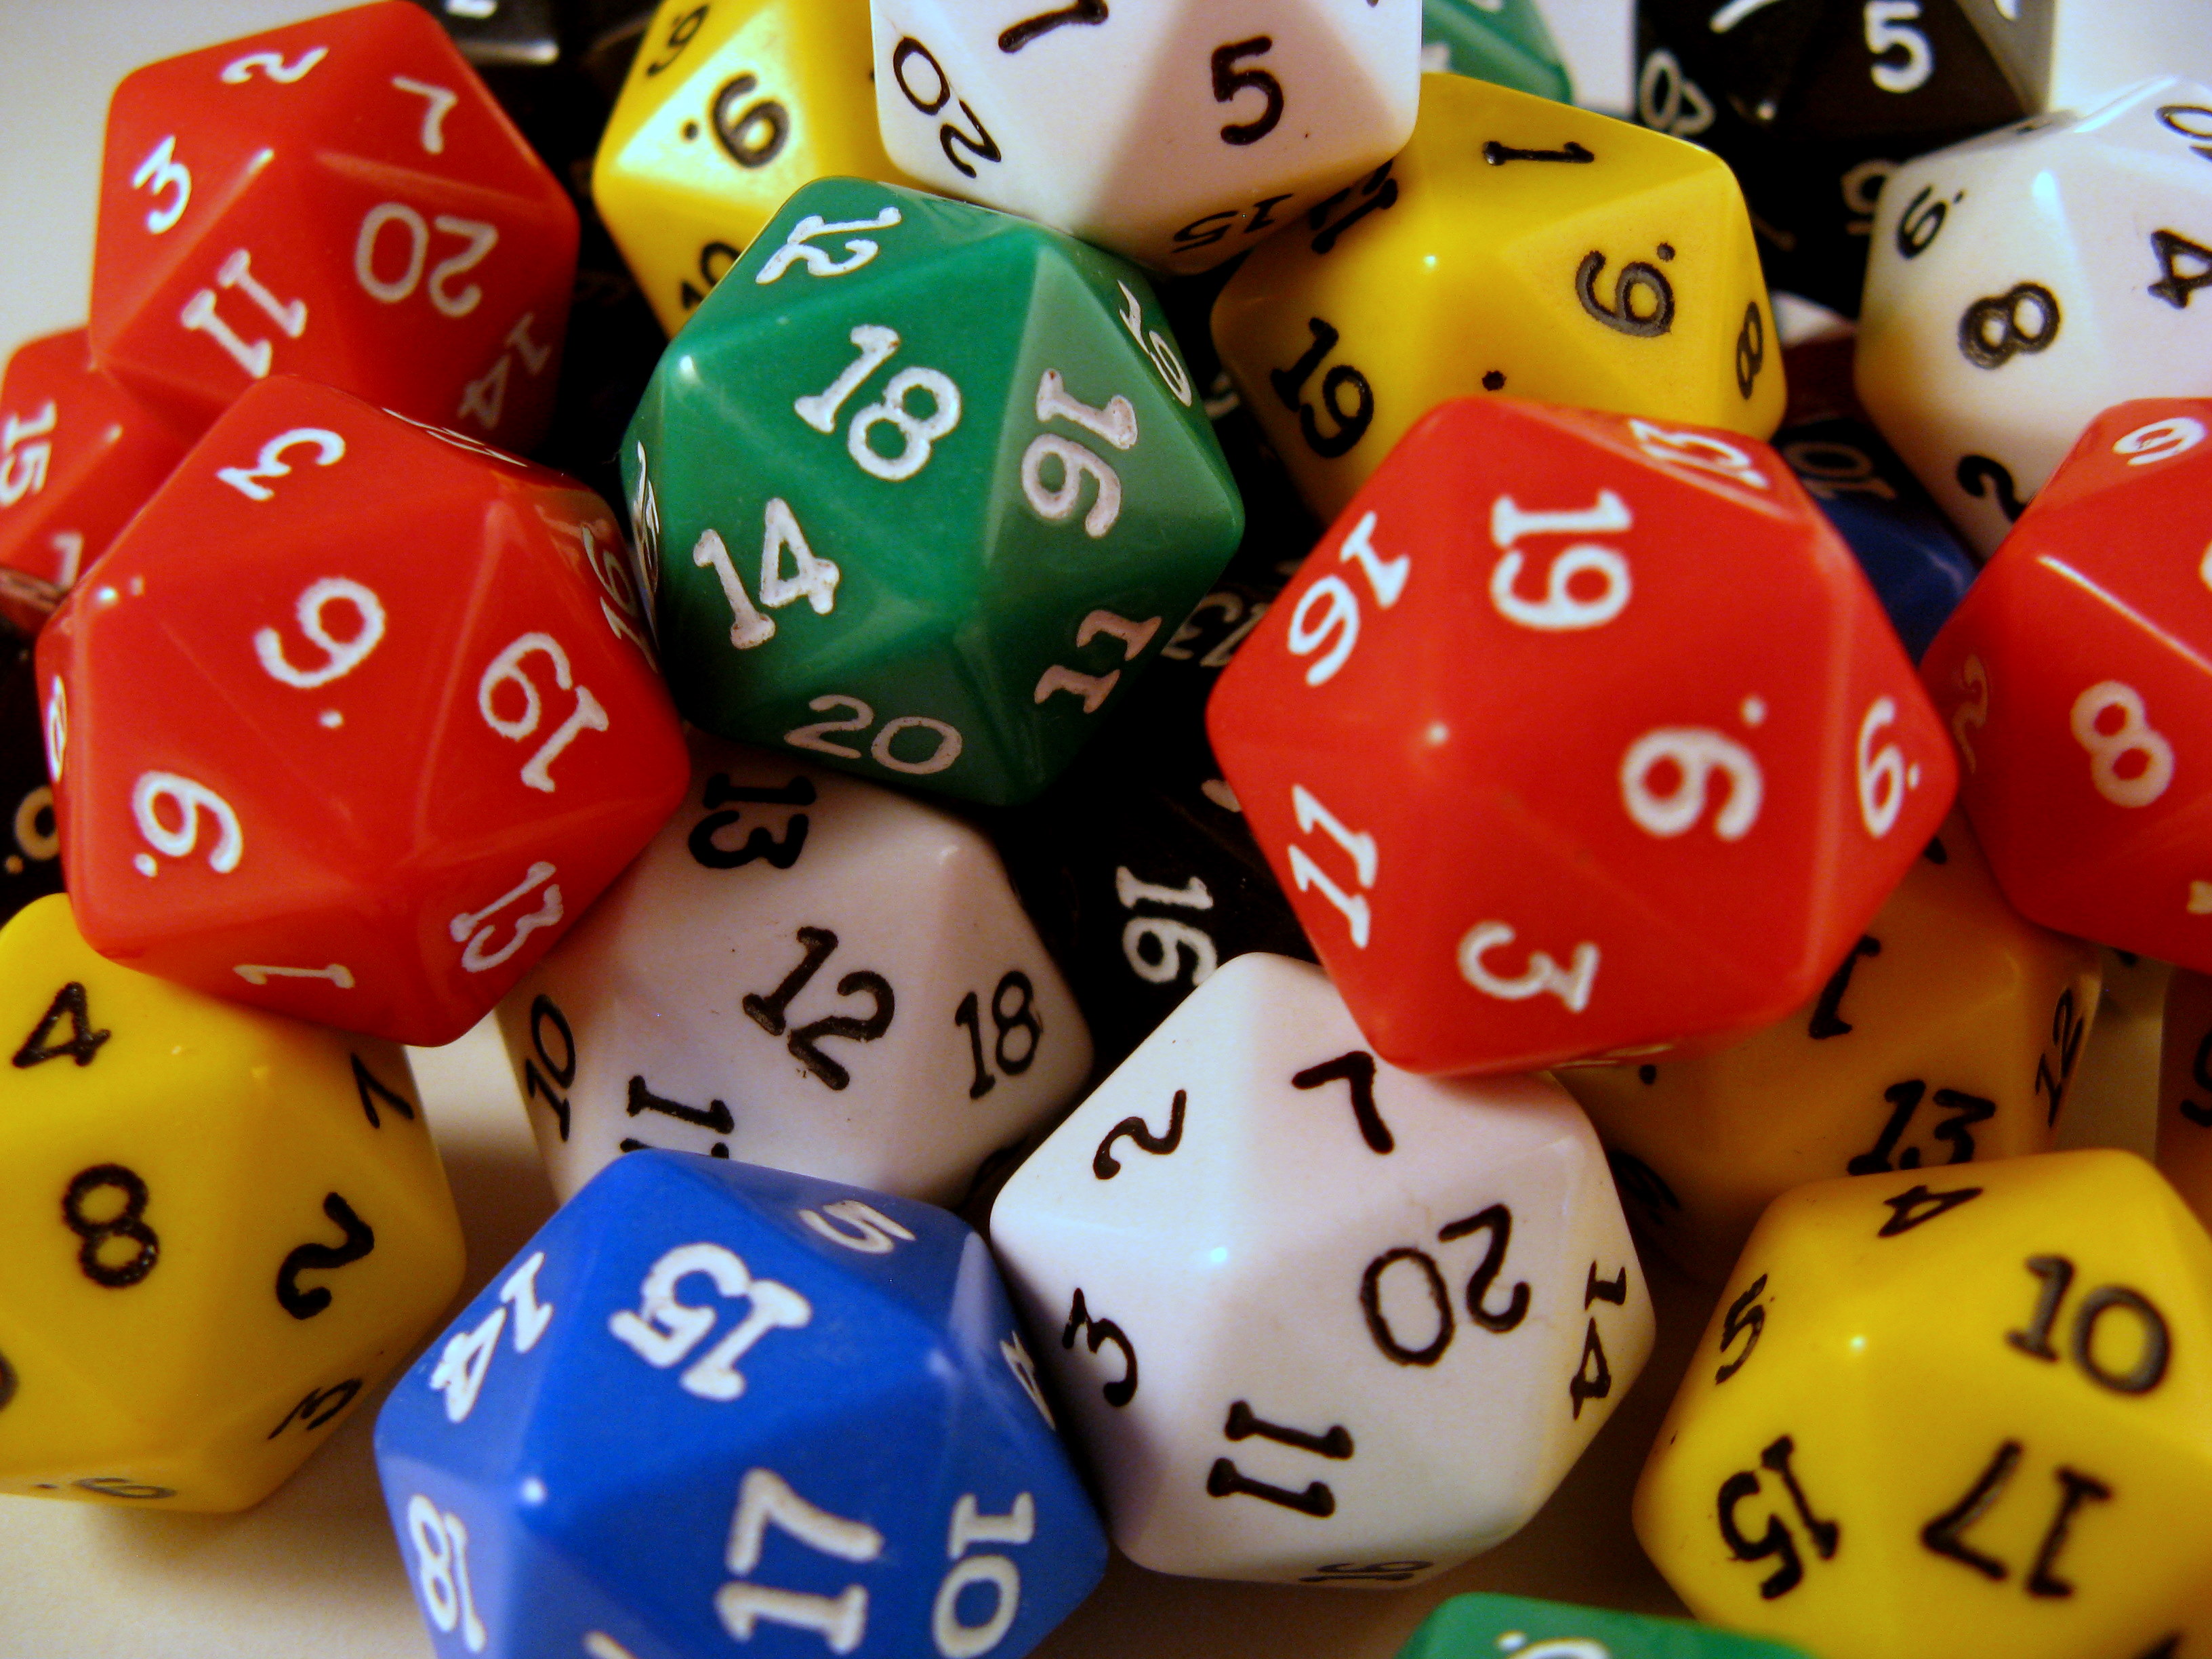 Вероятнее. Теория вероятностей. Комбинаторика в азартных играх. Математическая теория игр. Теория вероятности в азартных играх.